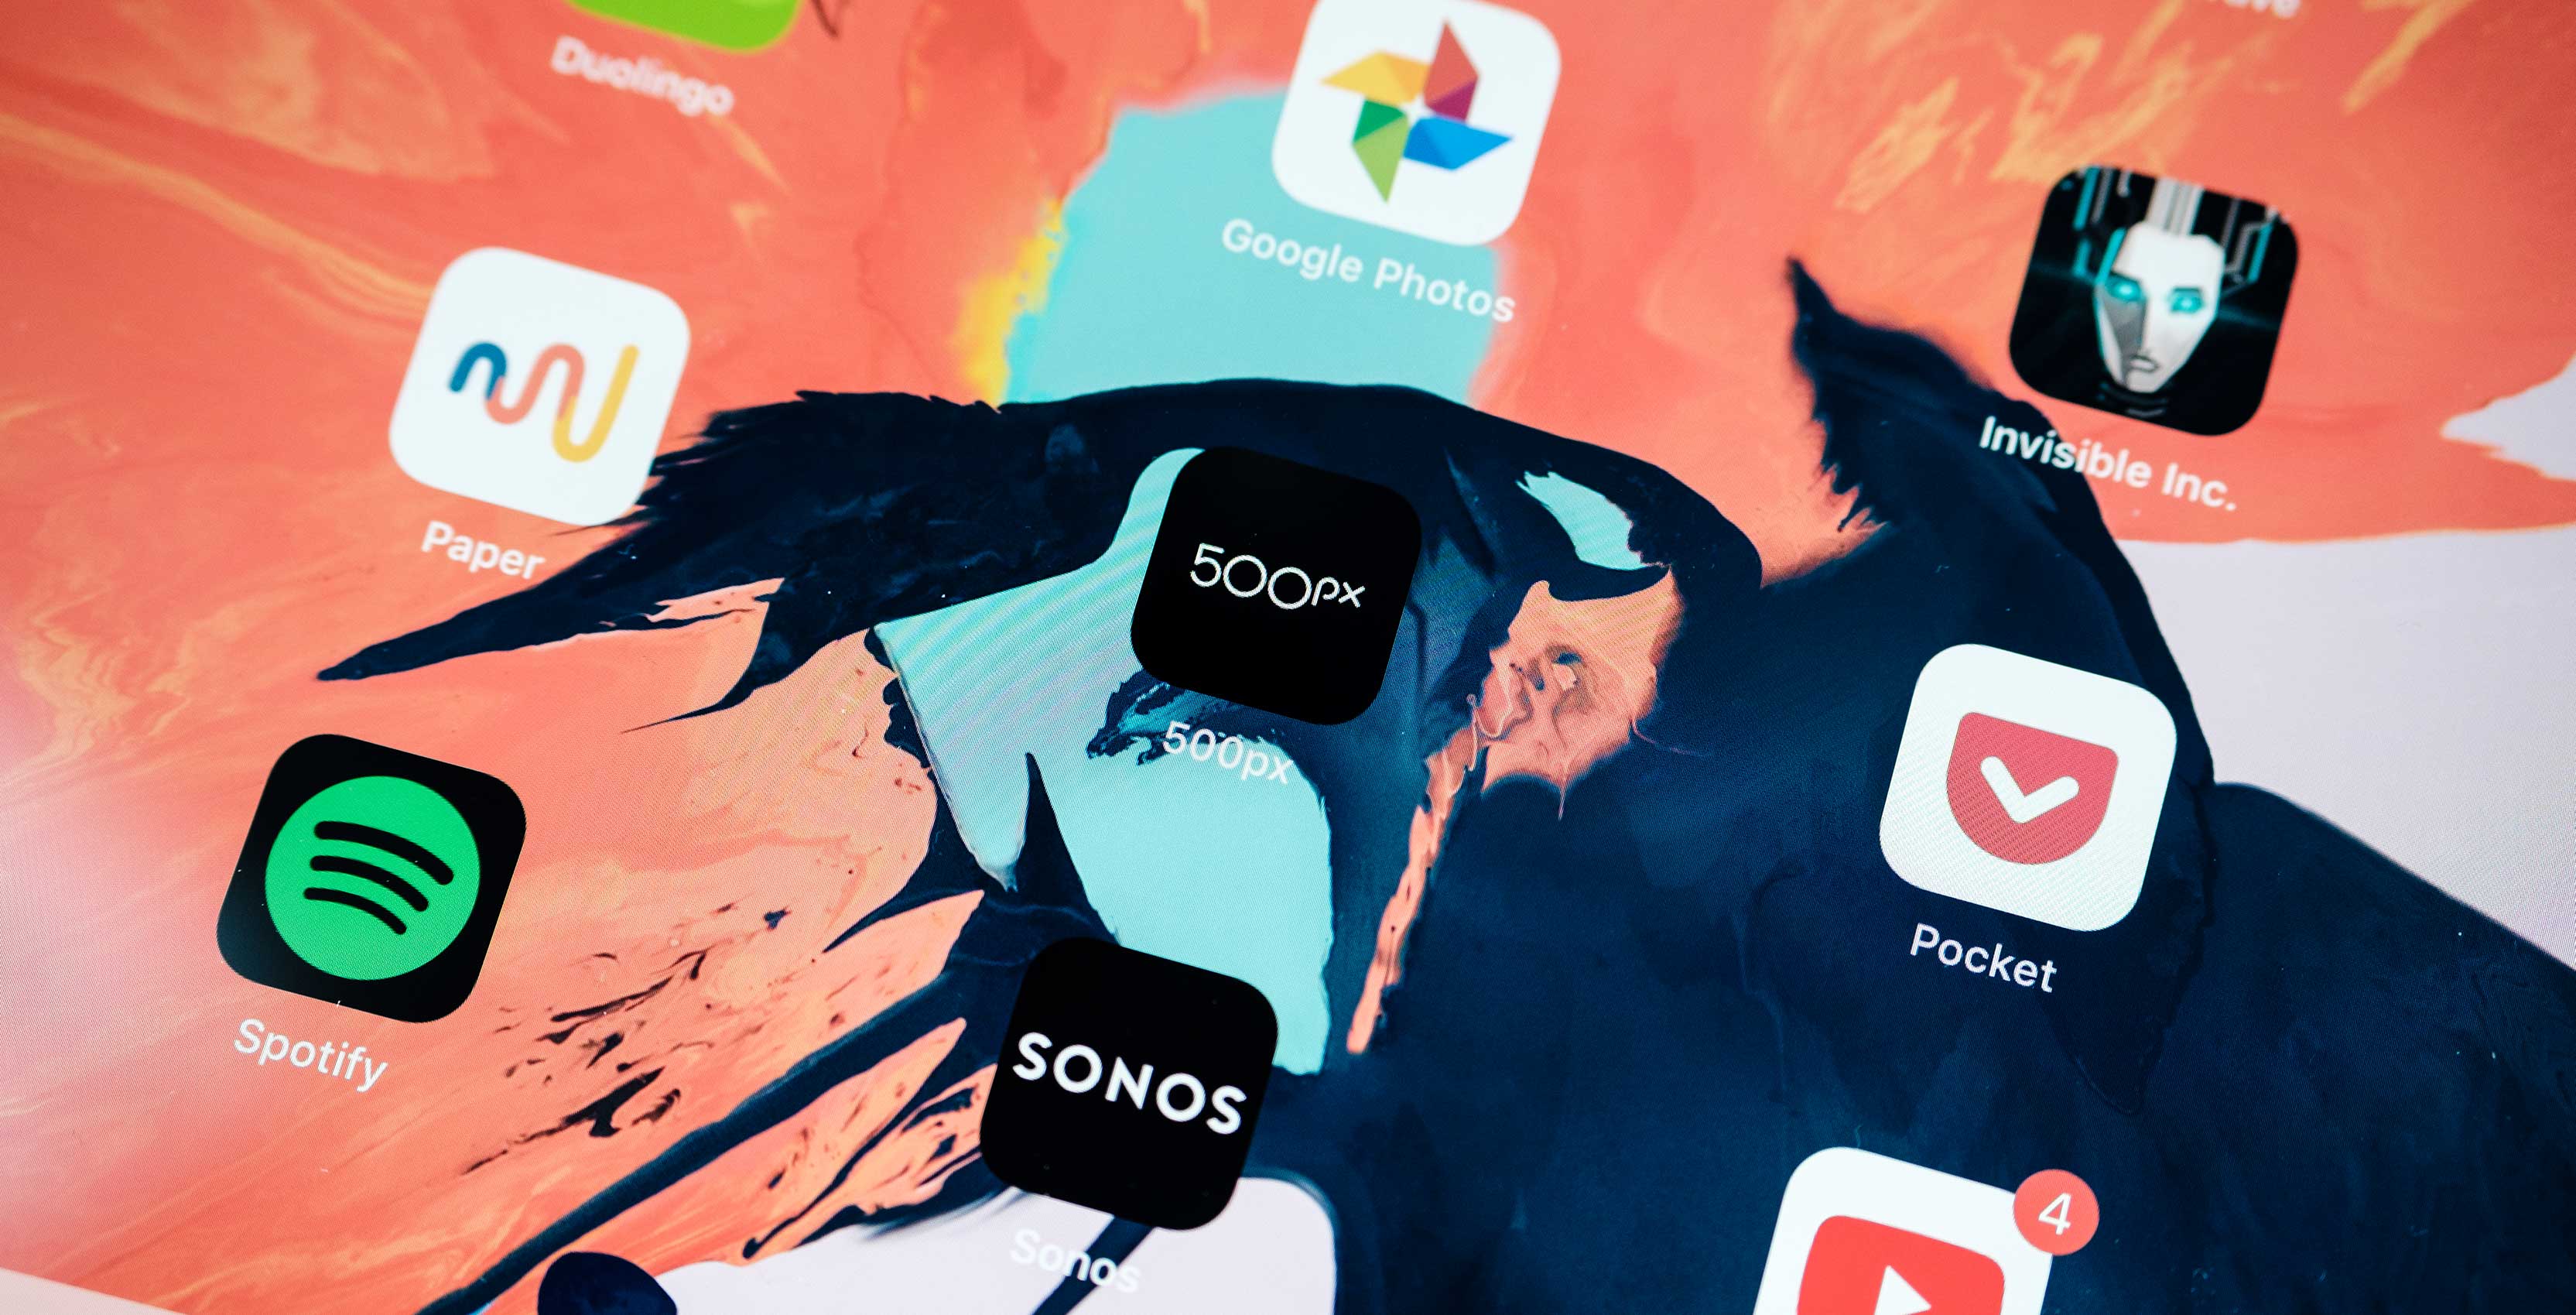 500px app icon